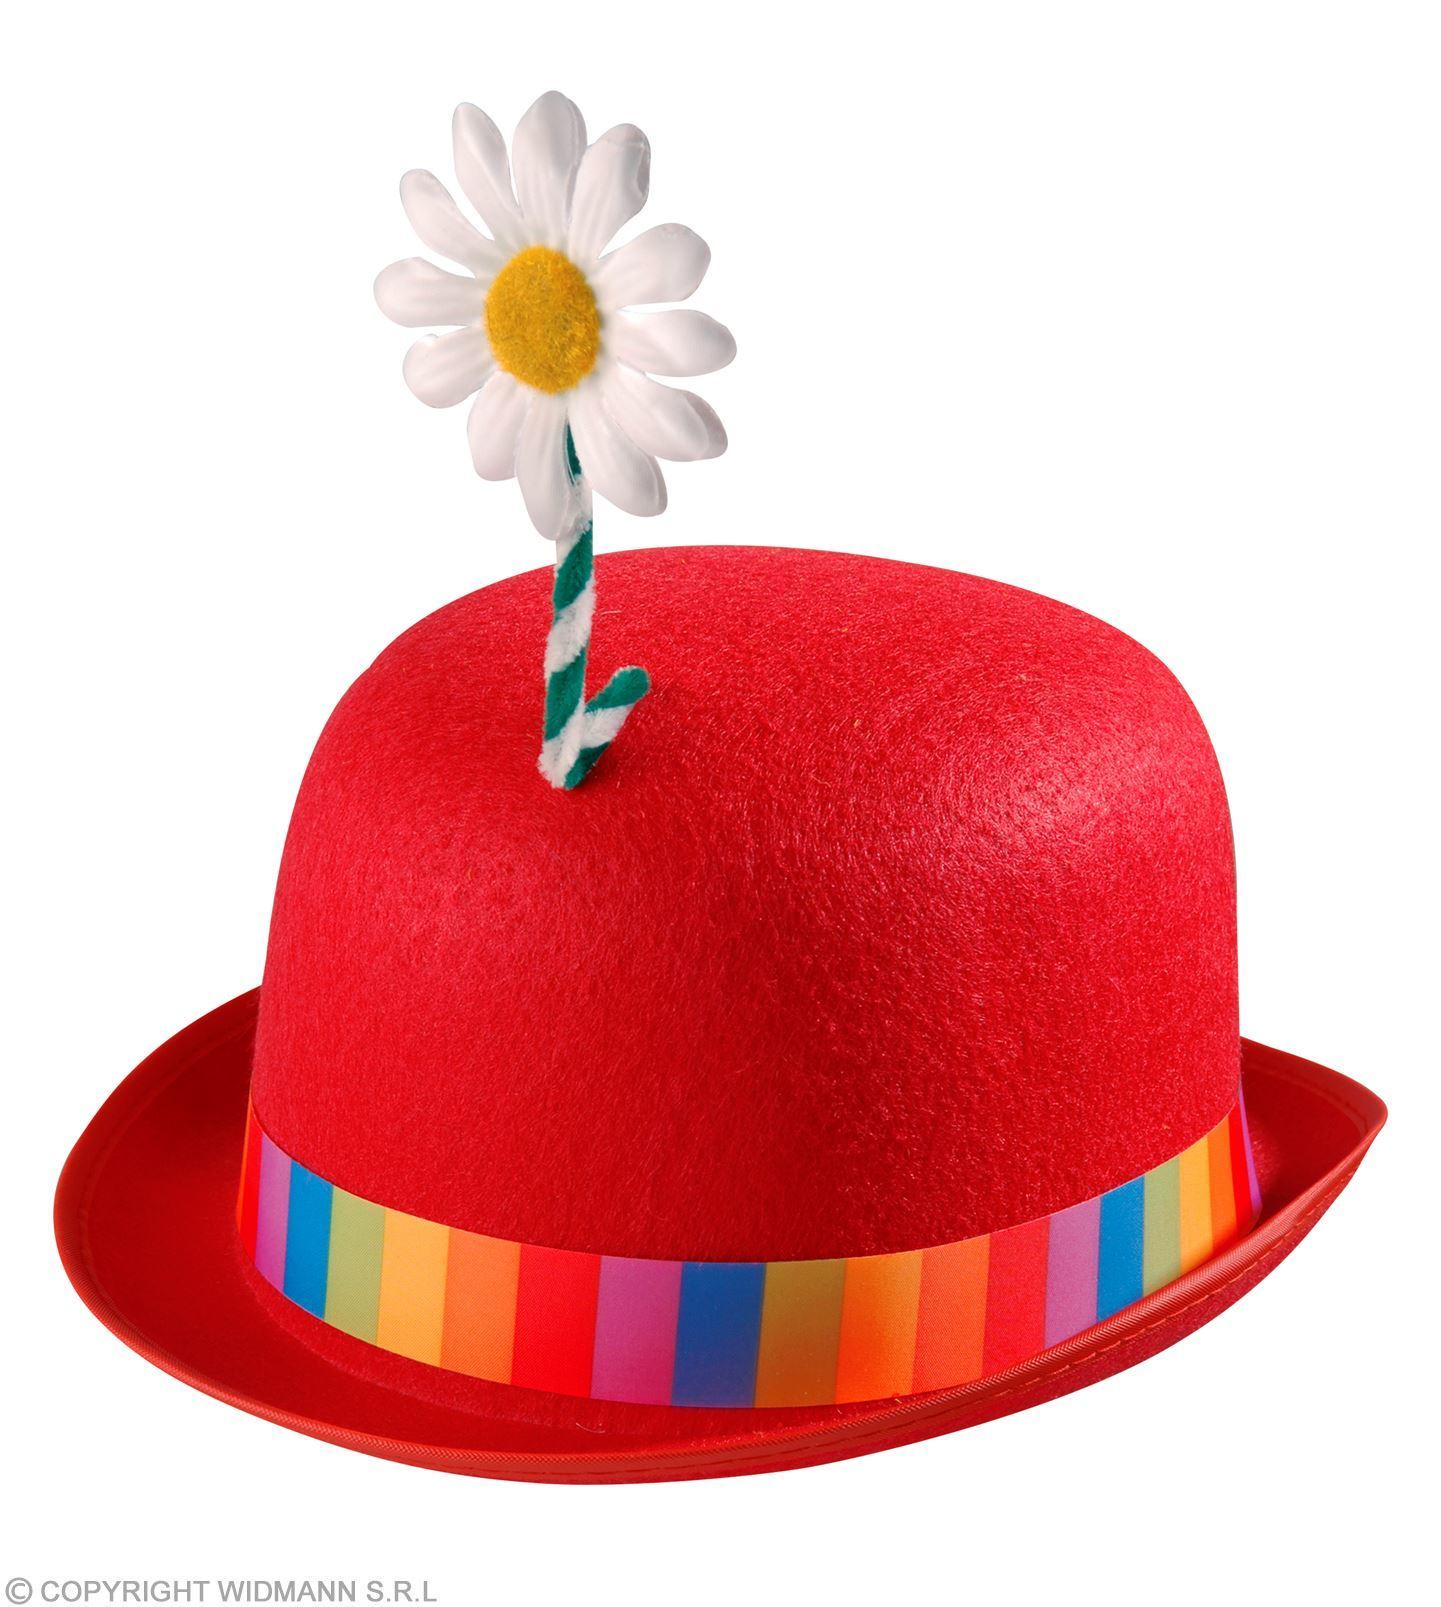 Rode bolhoed vilt met een bloem op de bovenkant clowns hoed